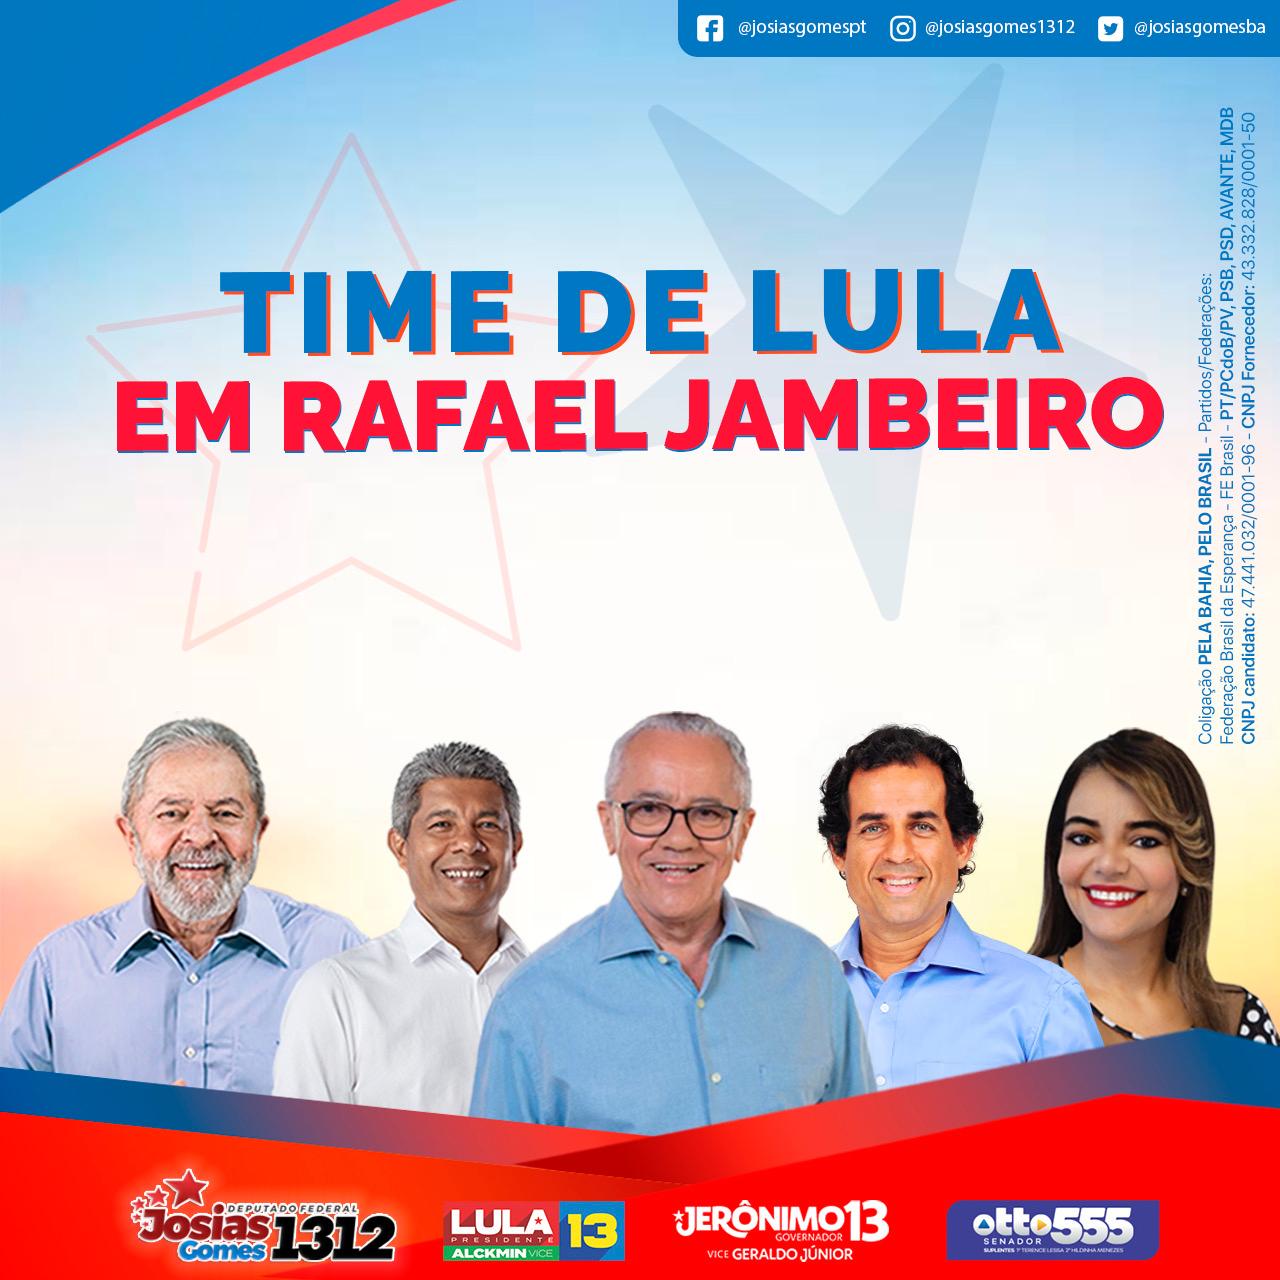 Time De Lula Em Rafael Jambeiro